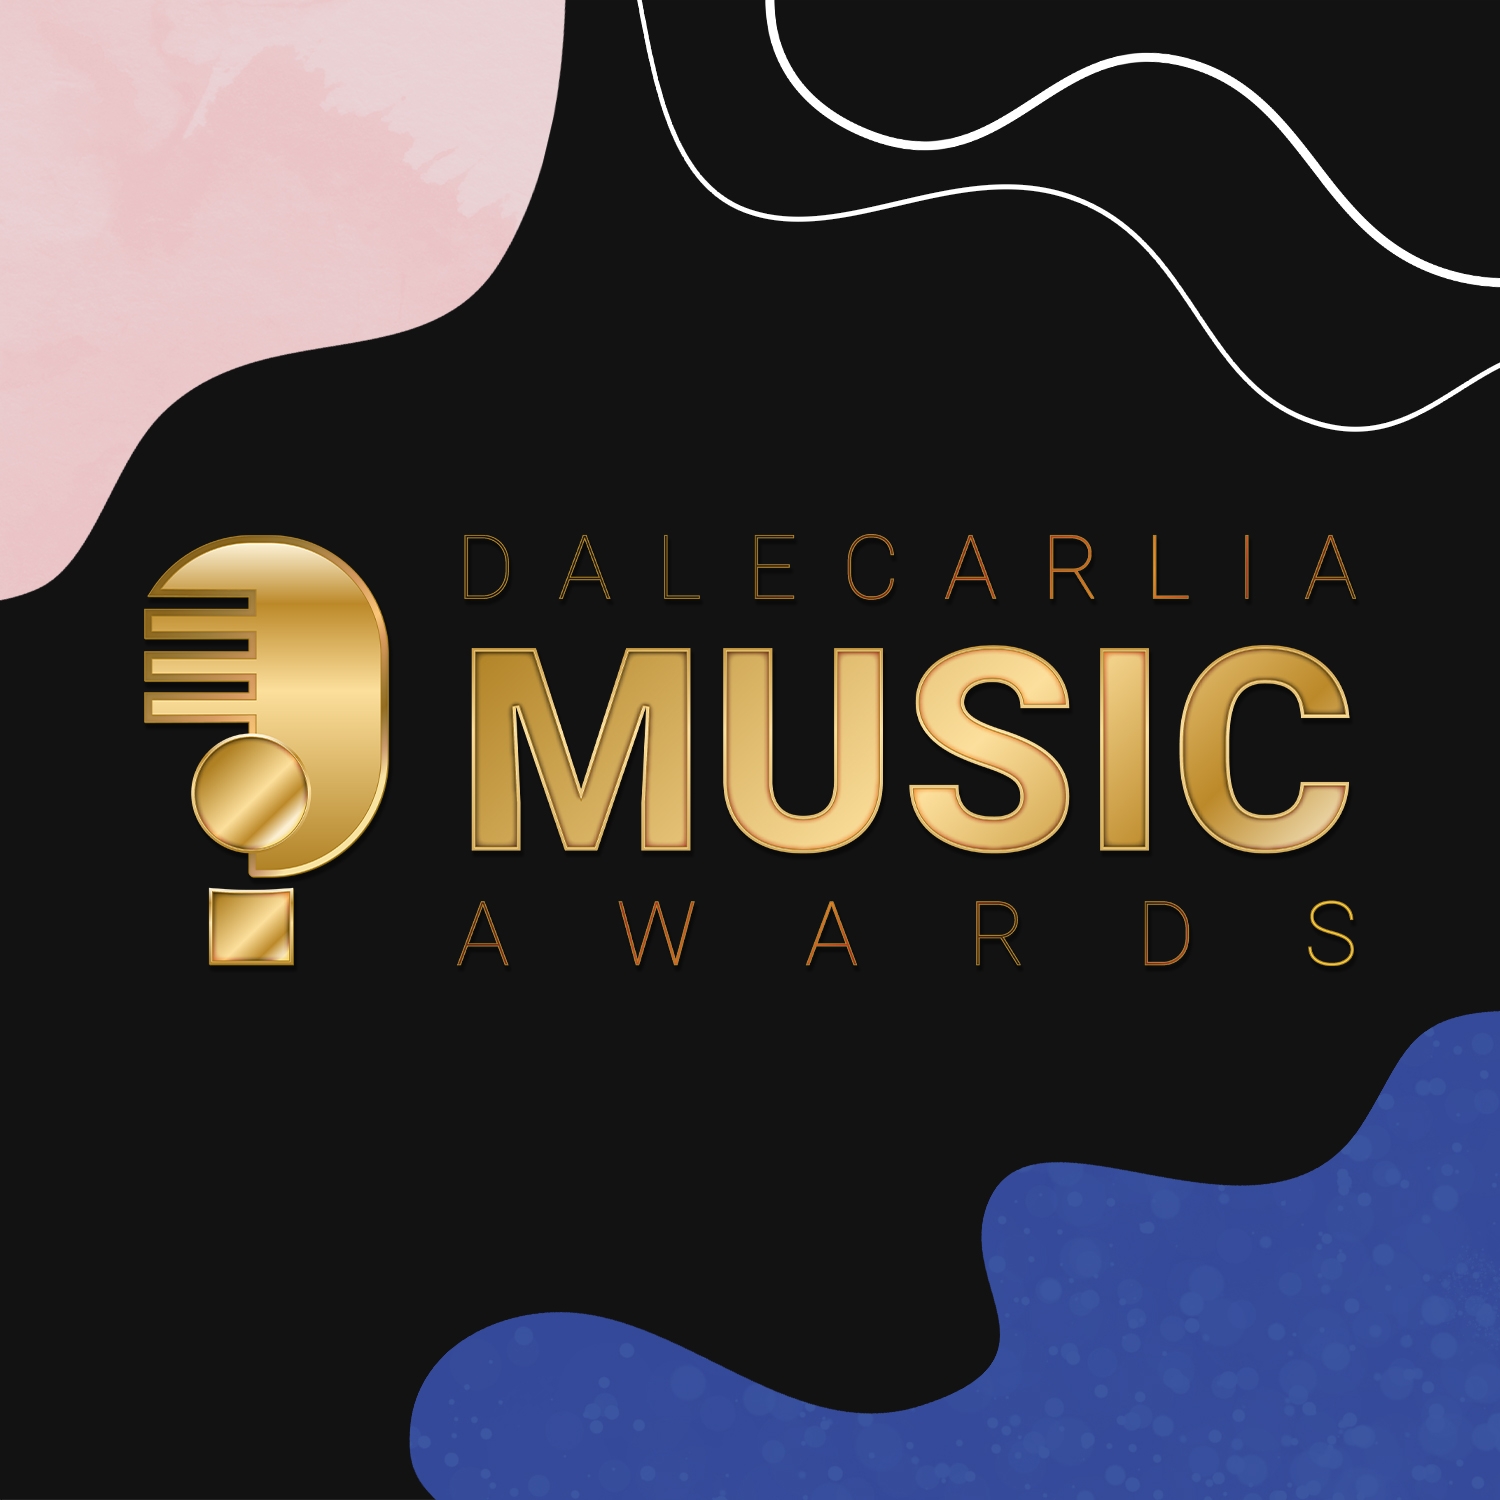 Miss Li and Company was nominated at the Dalecarlia Music Awards